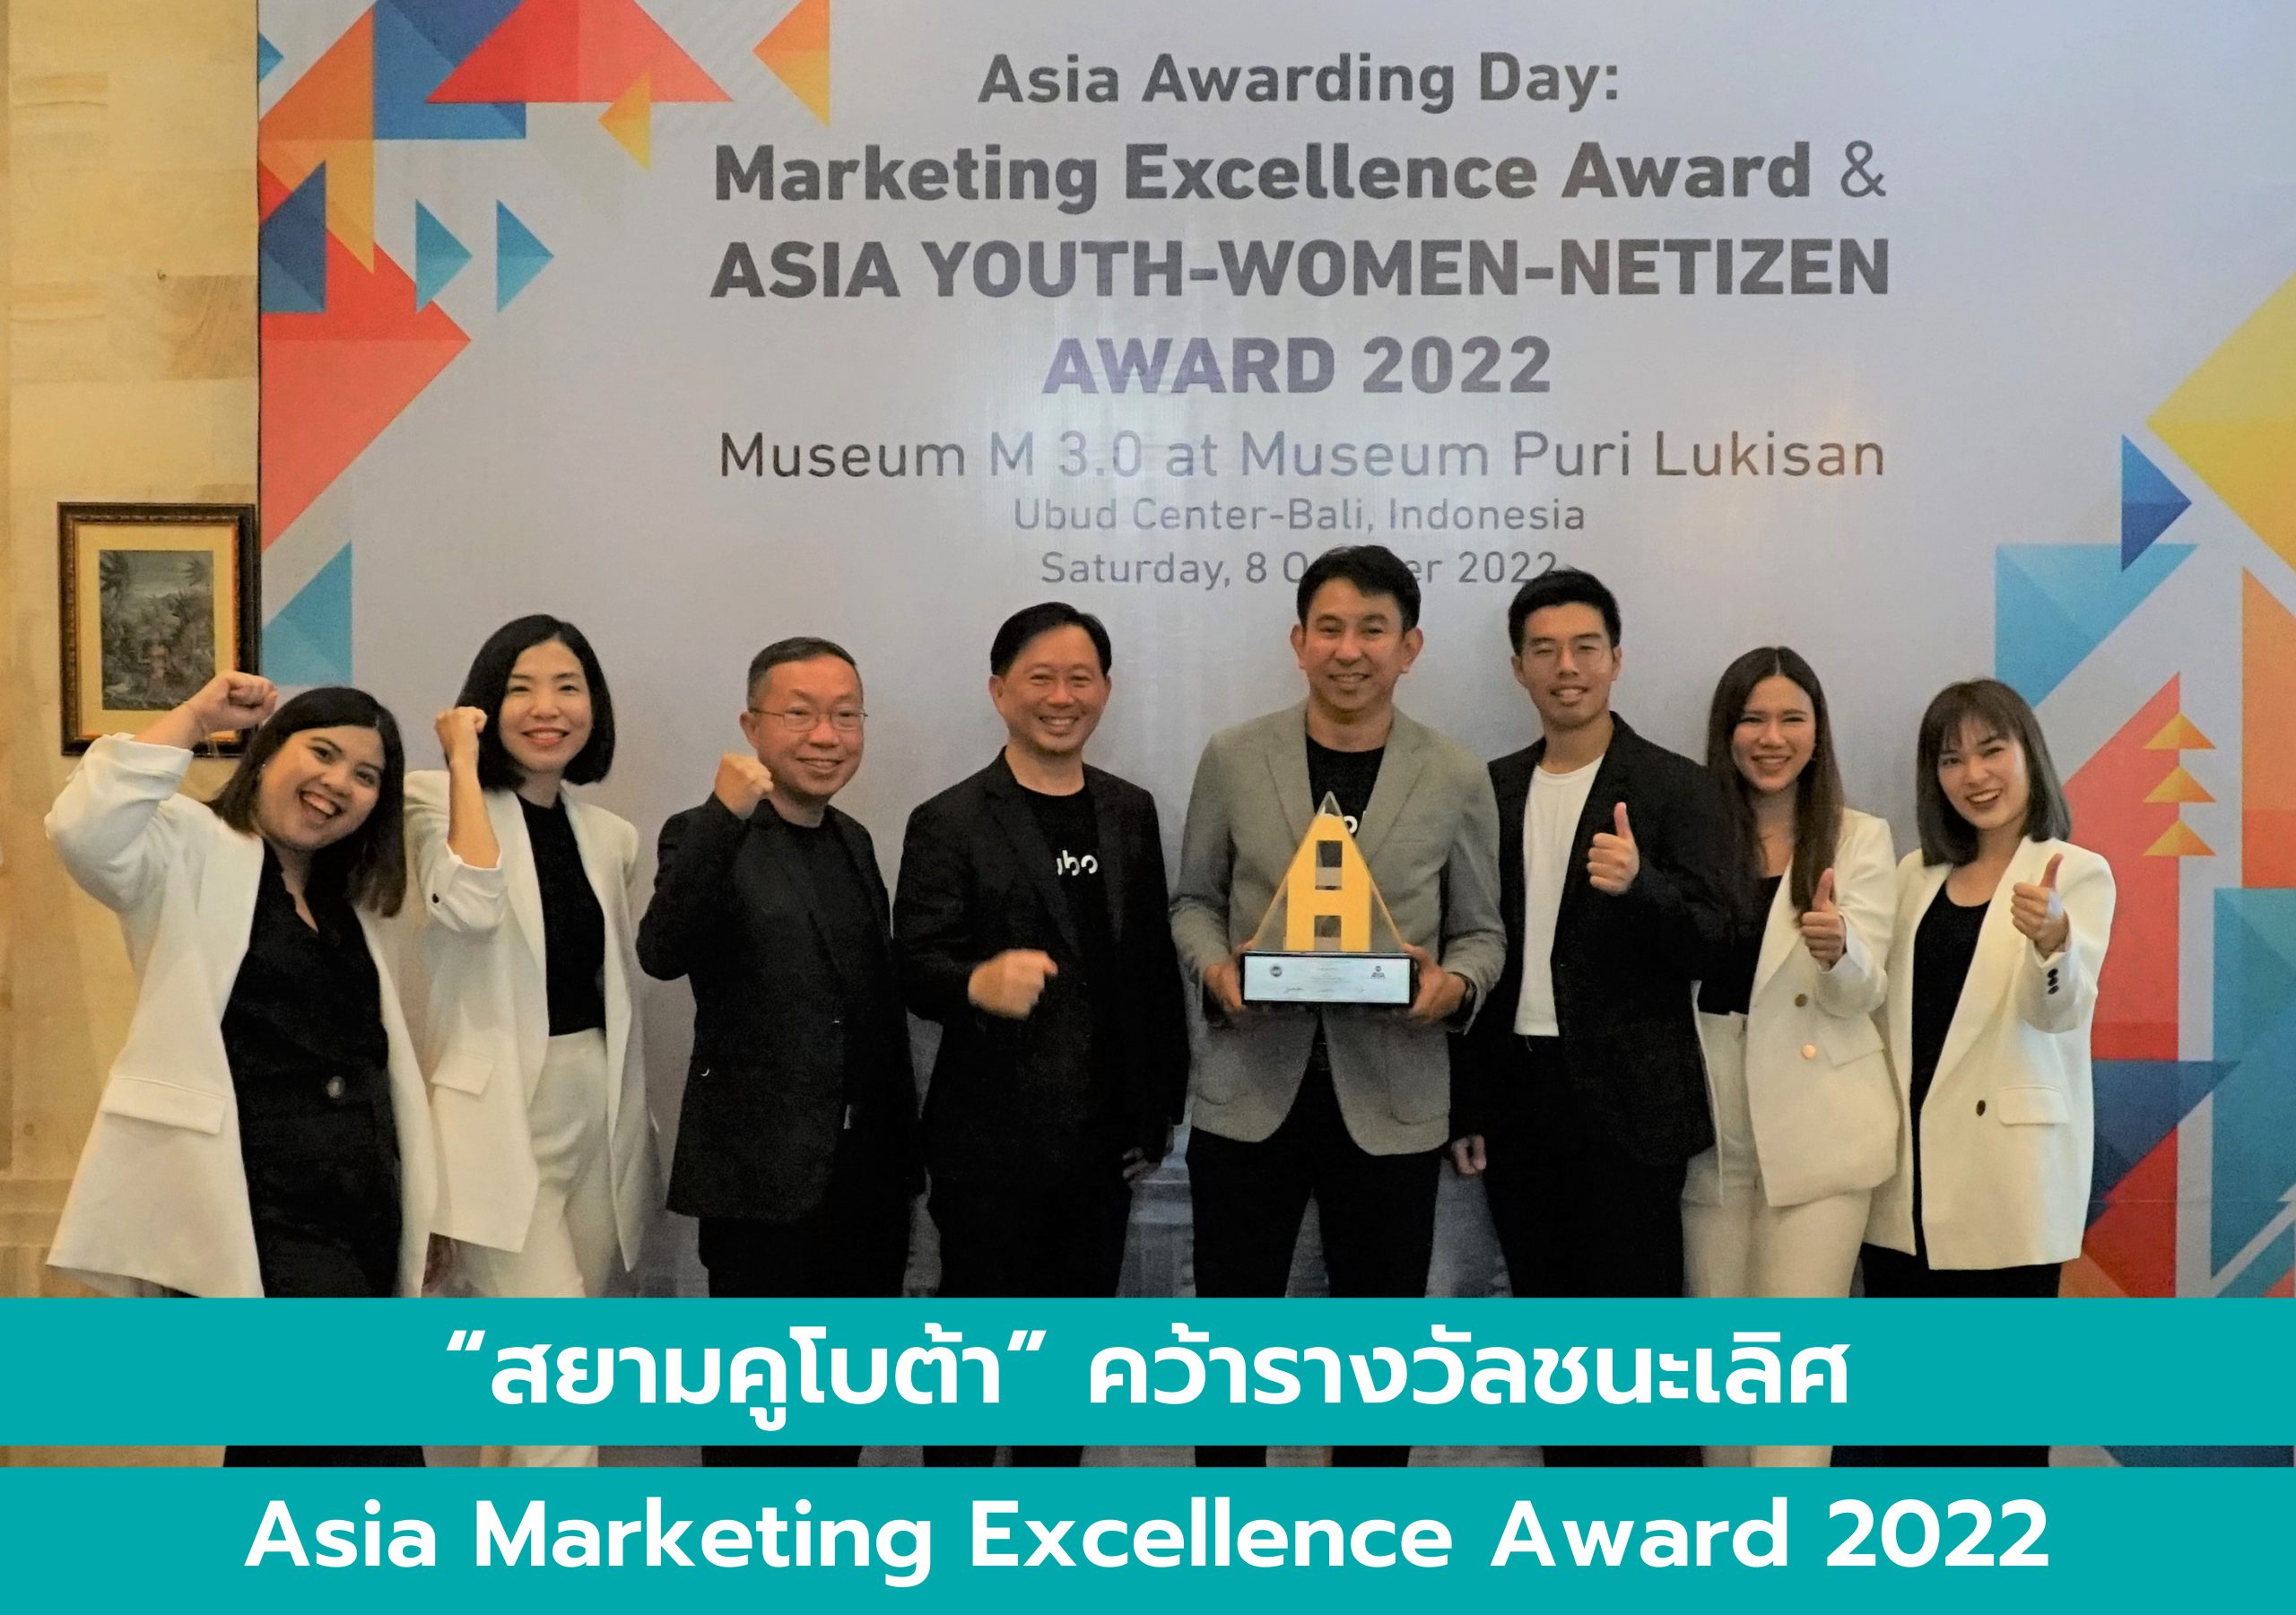 สยามคูโบต้า คว้ารางวัลชนะเลิศระดับเอเชีย Asia Marketing Excellence Award 2022 ครั้งที่ 7